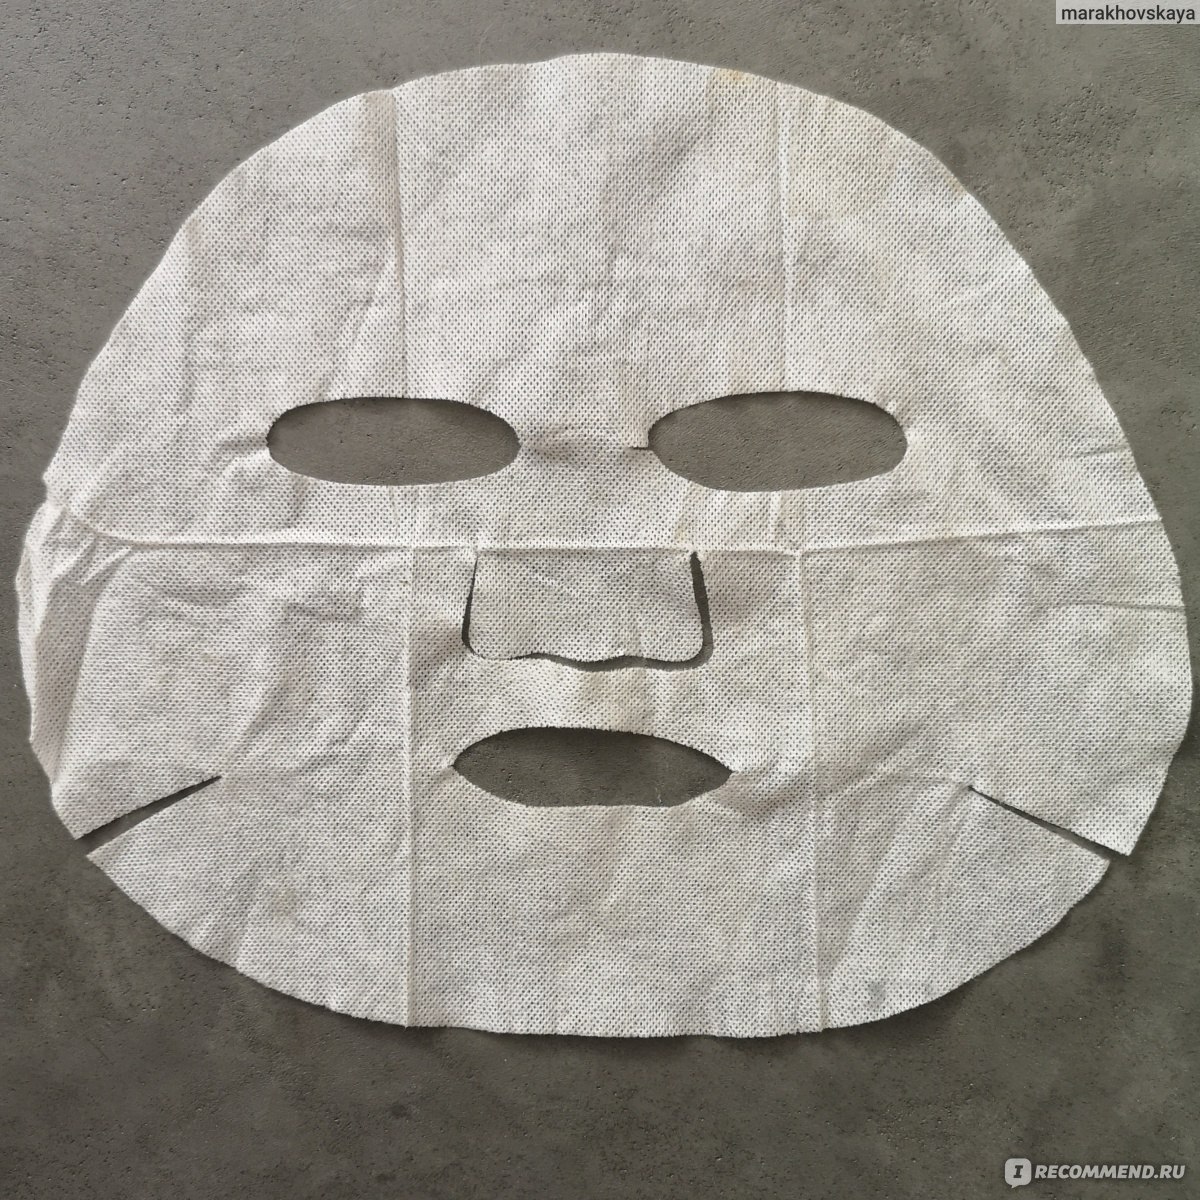 Можно использовать тканевую маску повторно. В маске довольный. Shining Mask электронная маска. COSCODI маска тканевая. Изображения для Shining Mask.